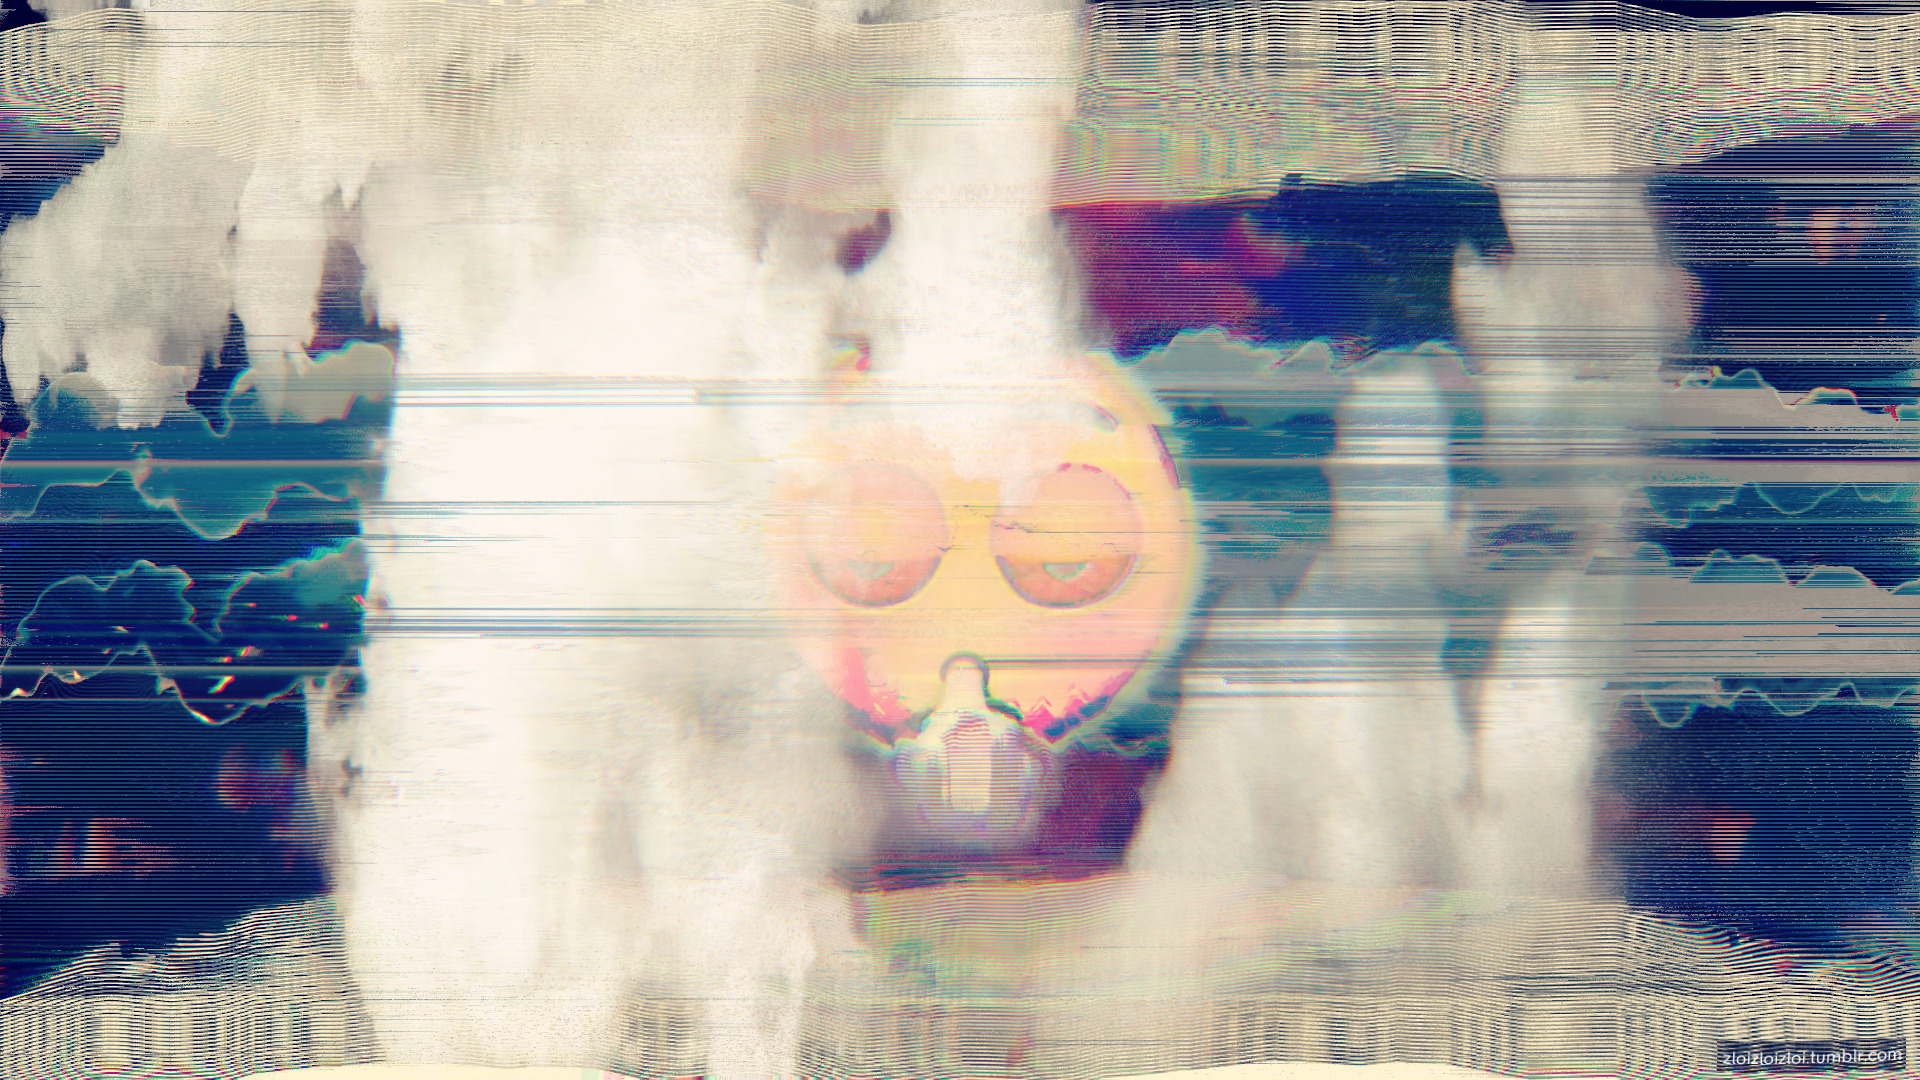 glitch art, Abstract, LSD Wallpaper